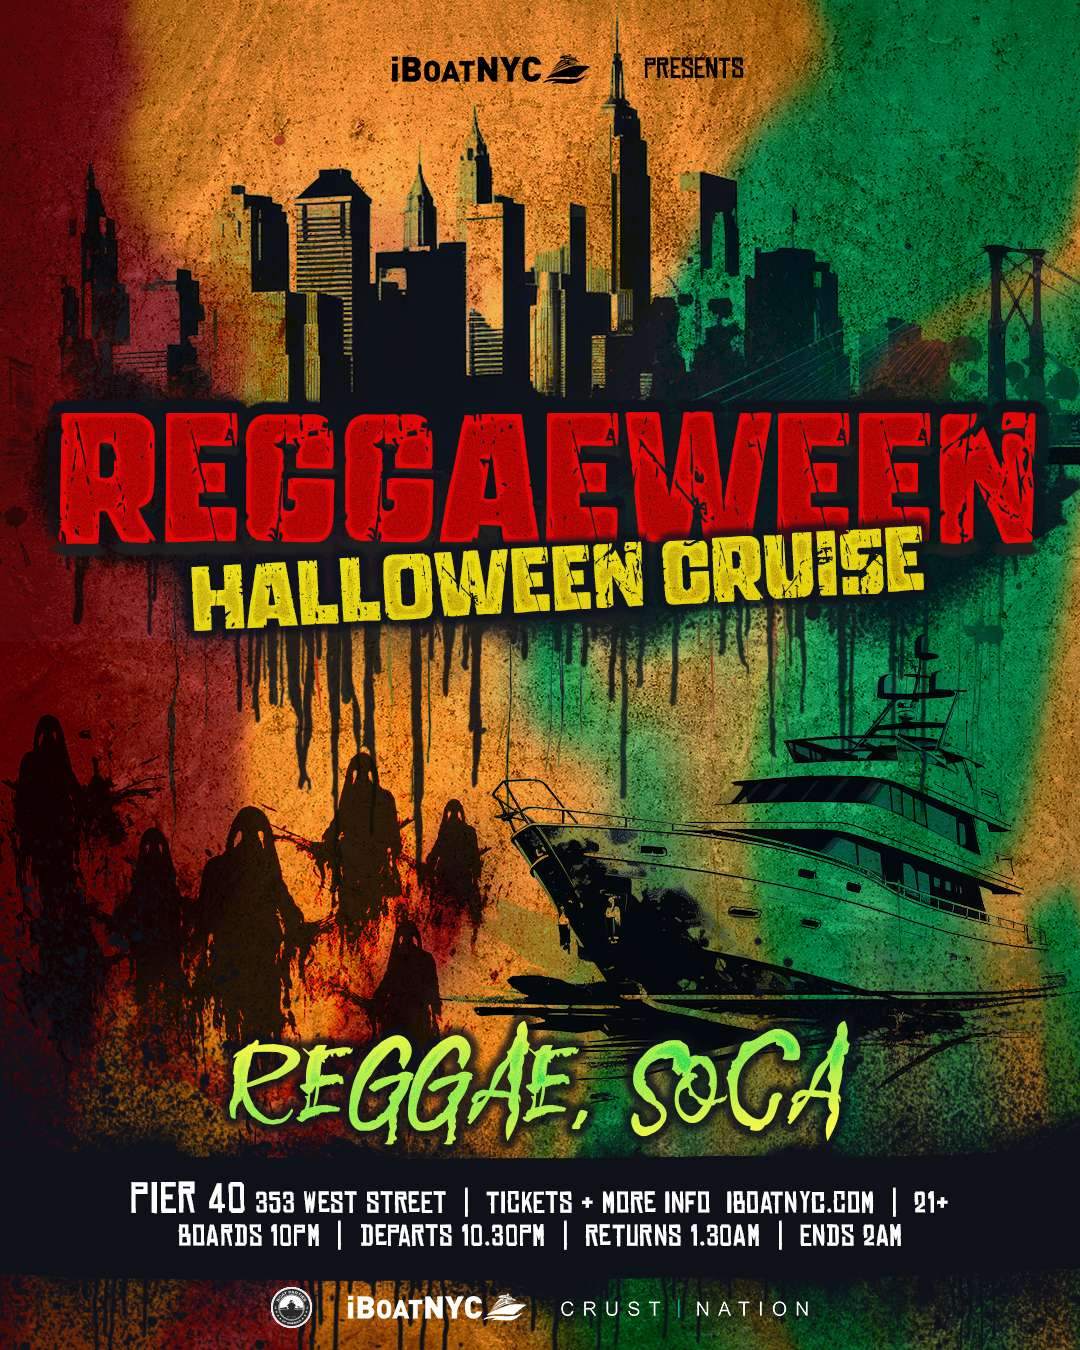 REGGAEWEEN Halloween Party - Reggae & Soca Costume Yacht Cruise NYC - フライヤー表